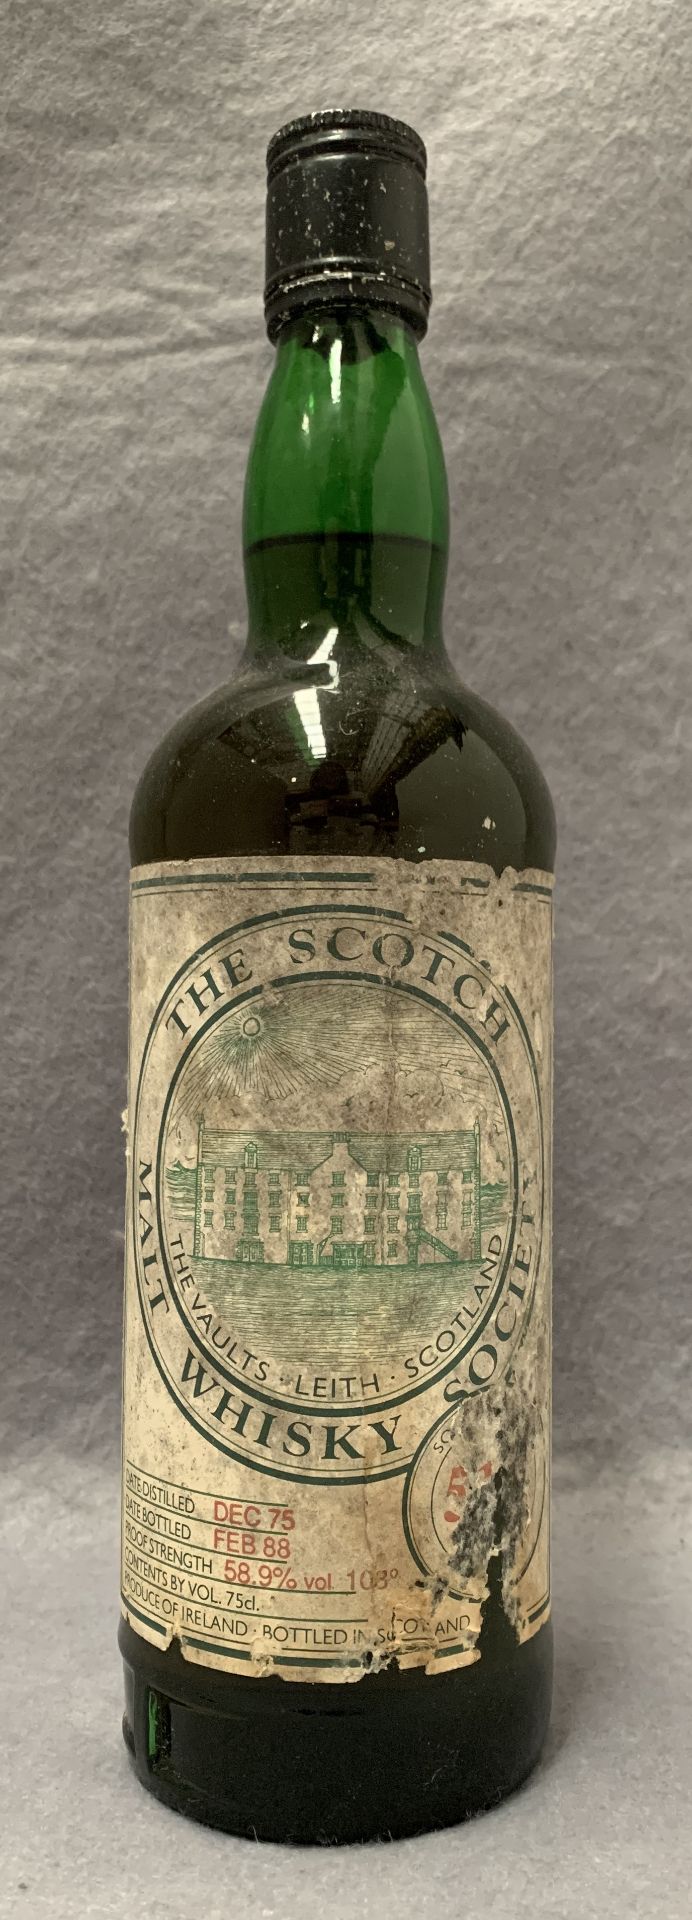 A 75cl bottle of The Scotch Malt Whisky Society whisky, cask no. 51.